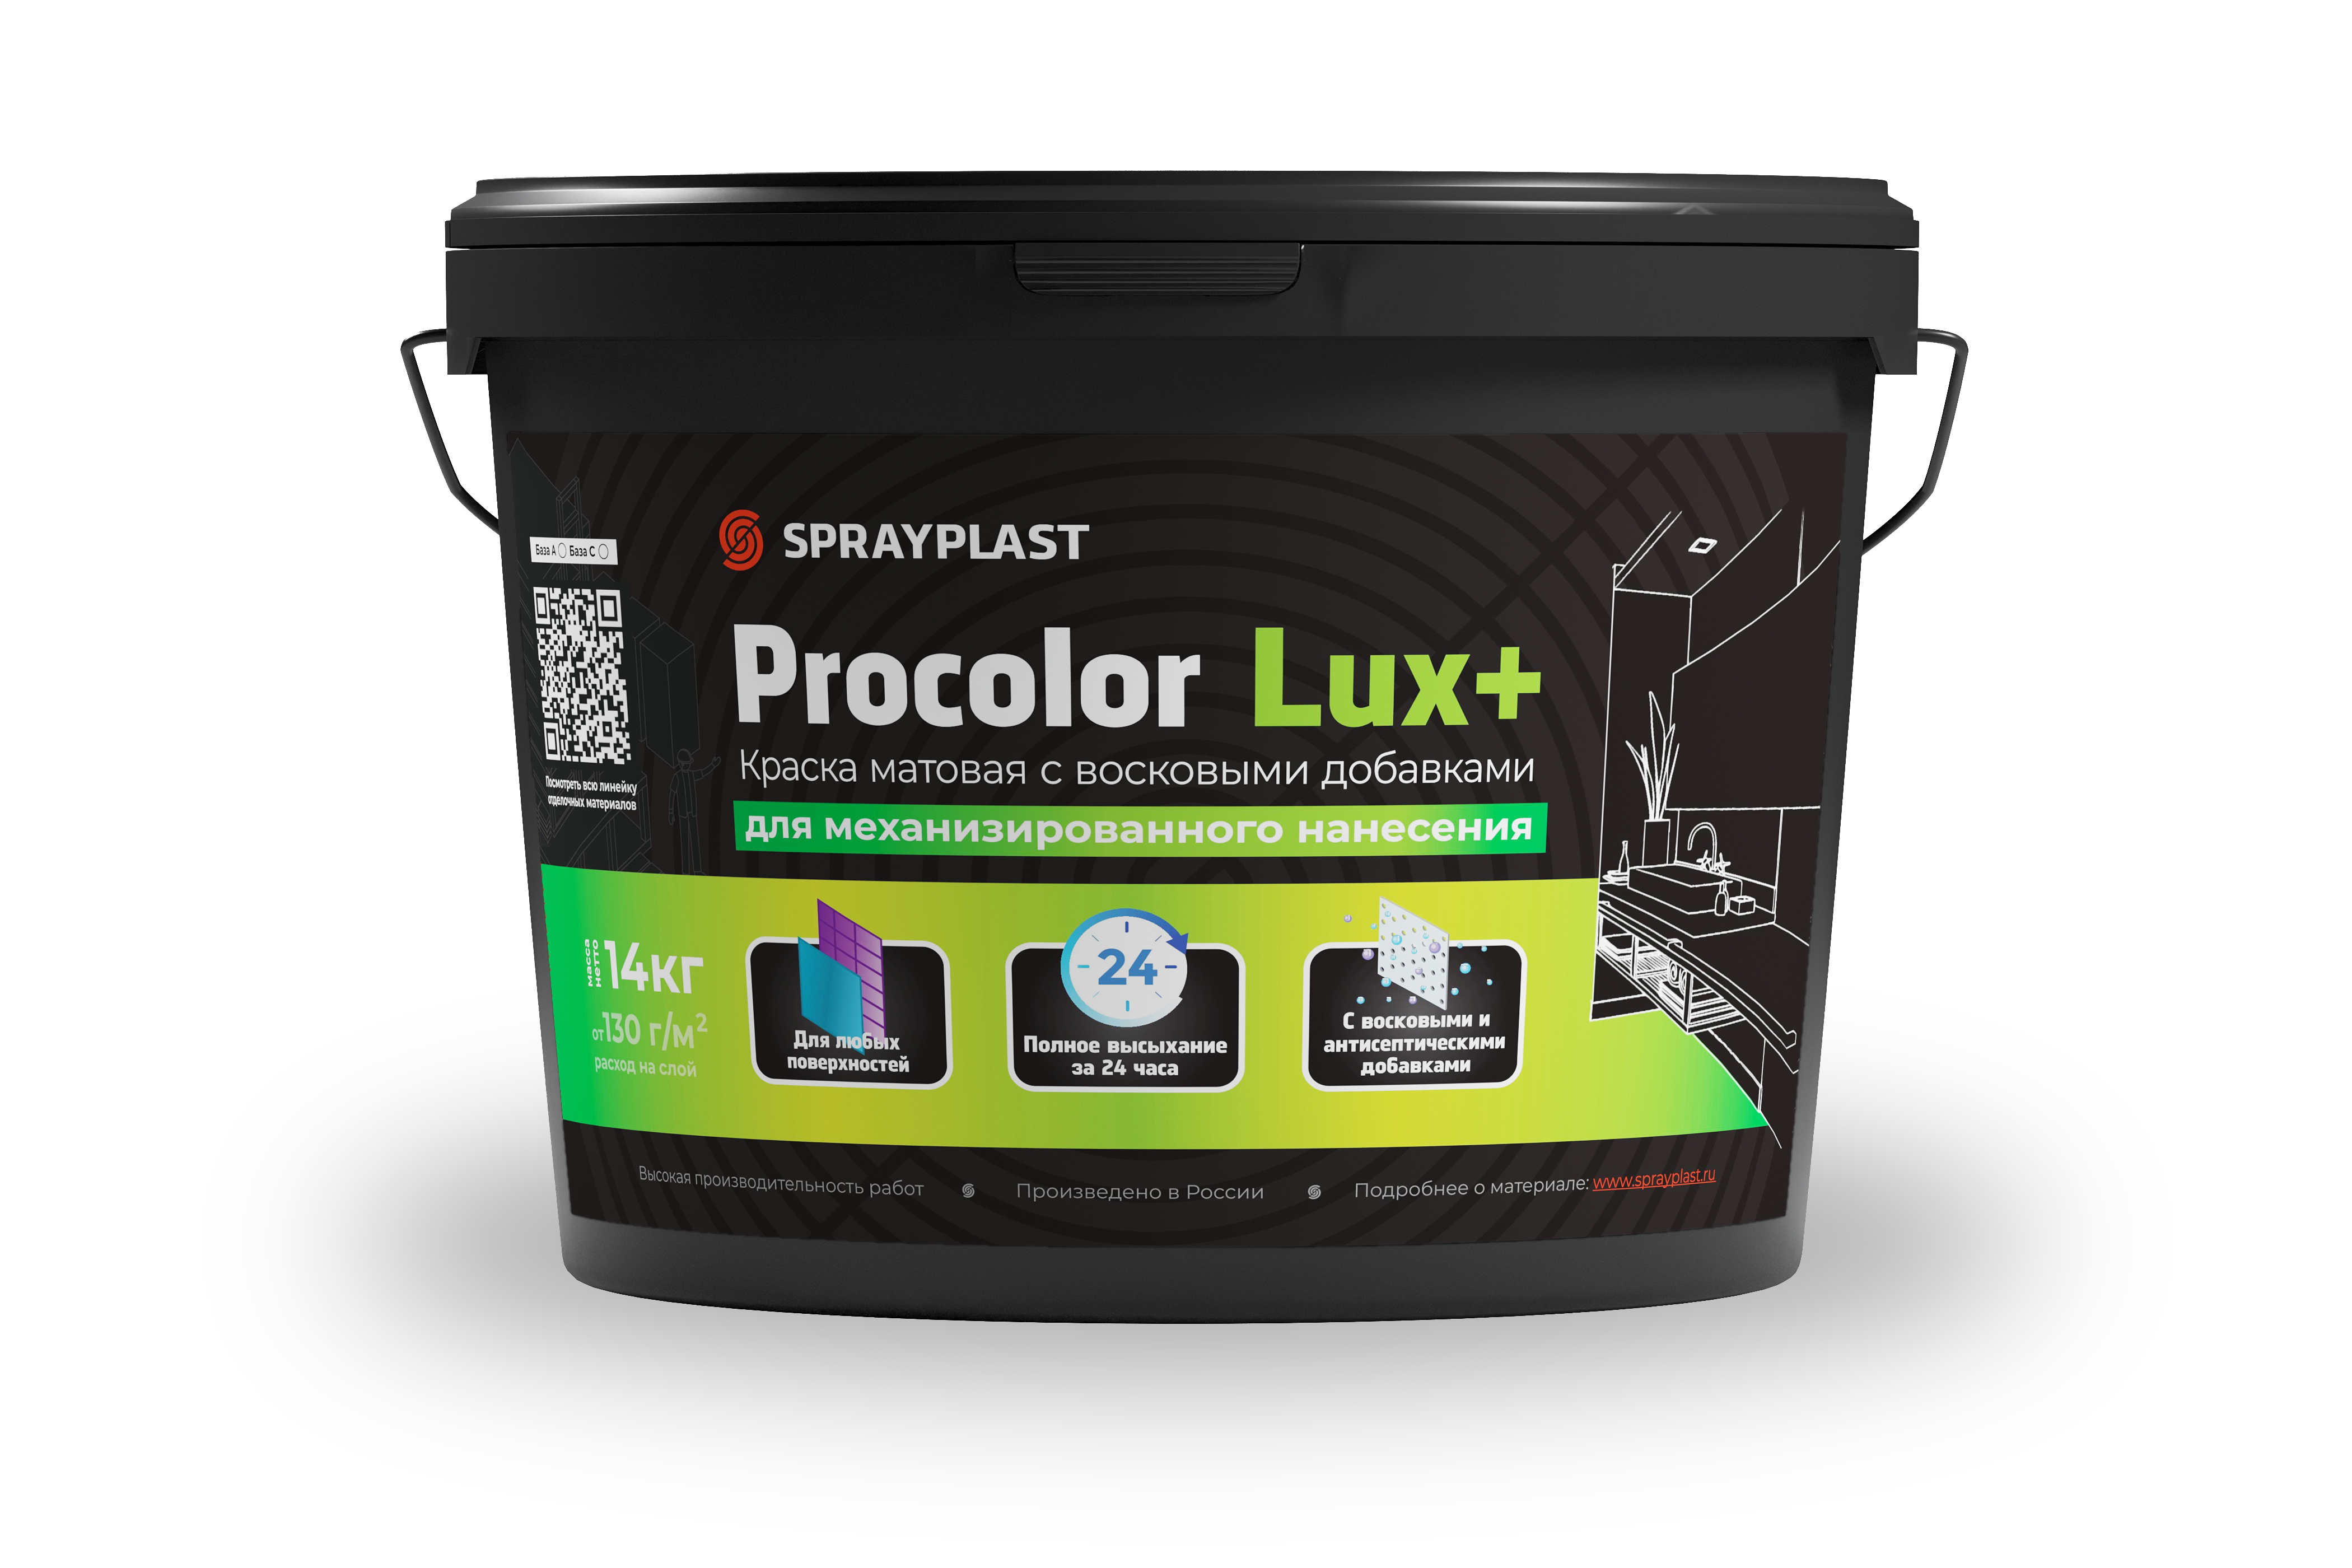 Procolor Lux+